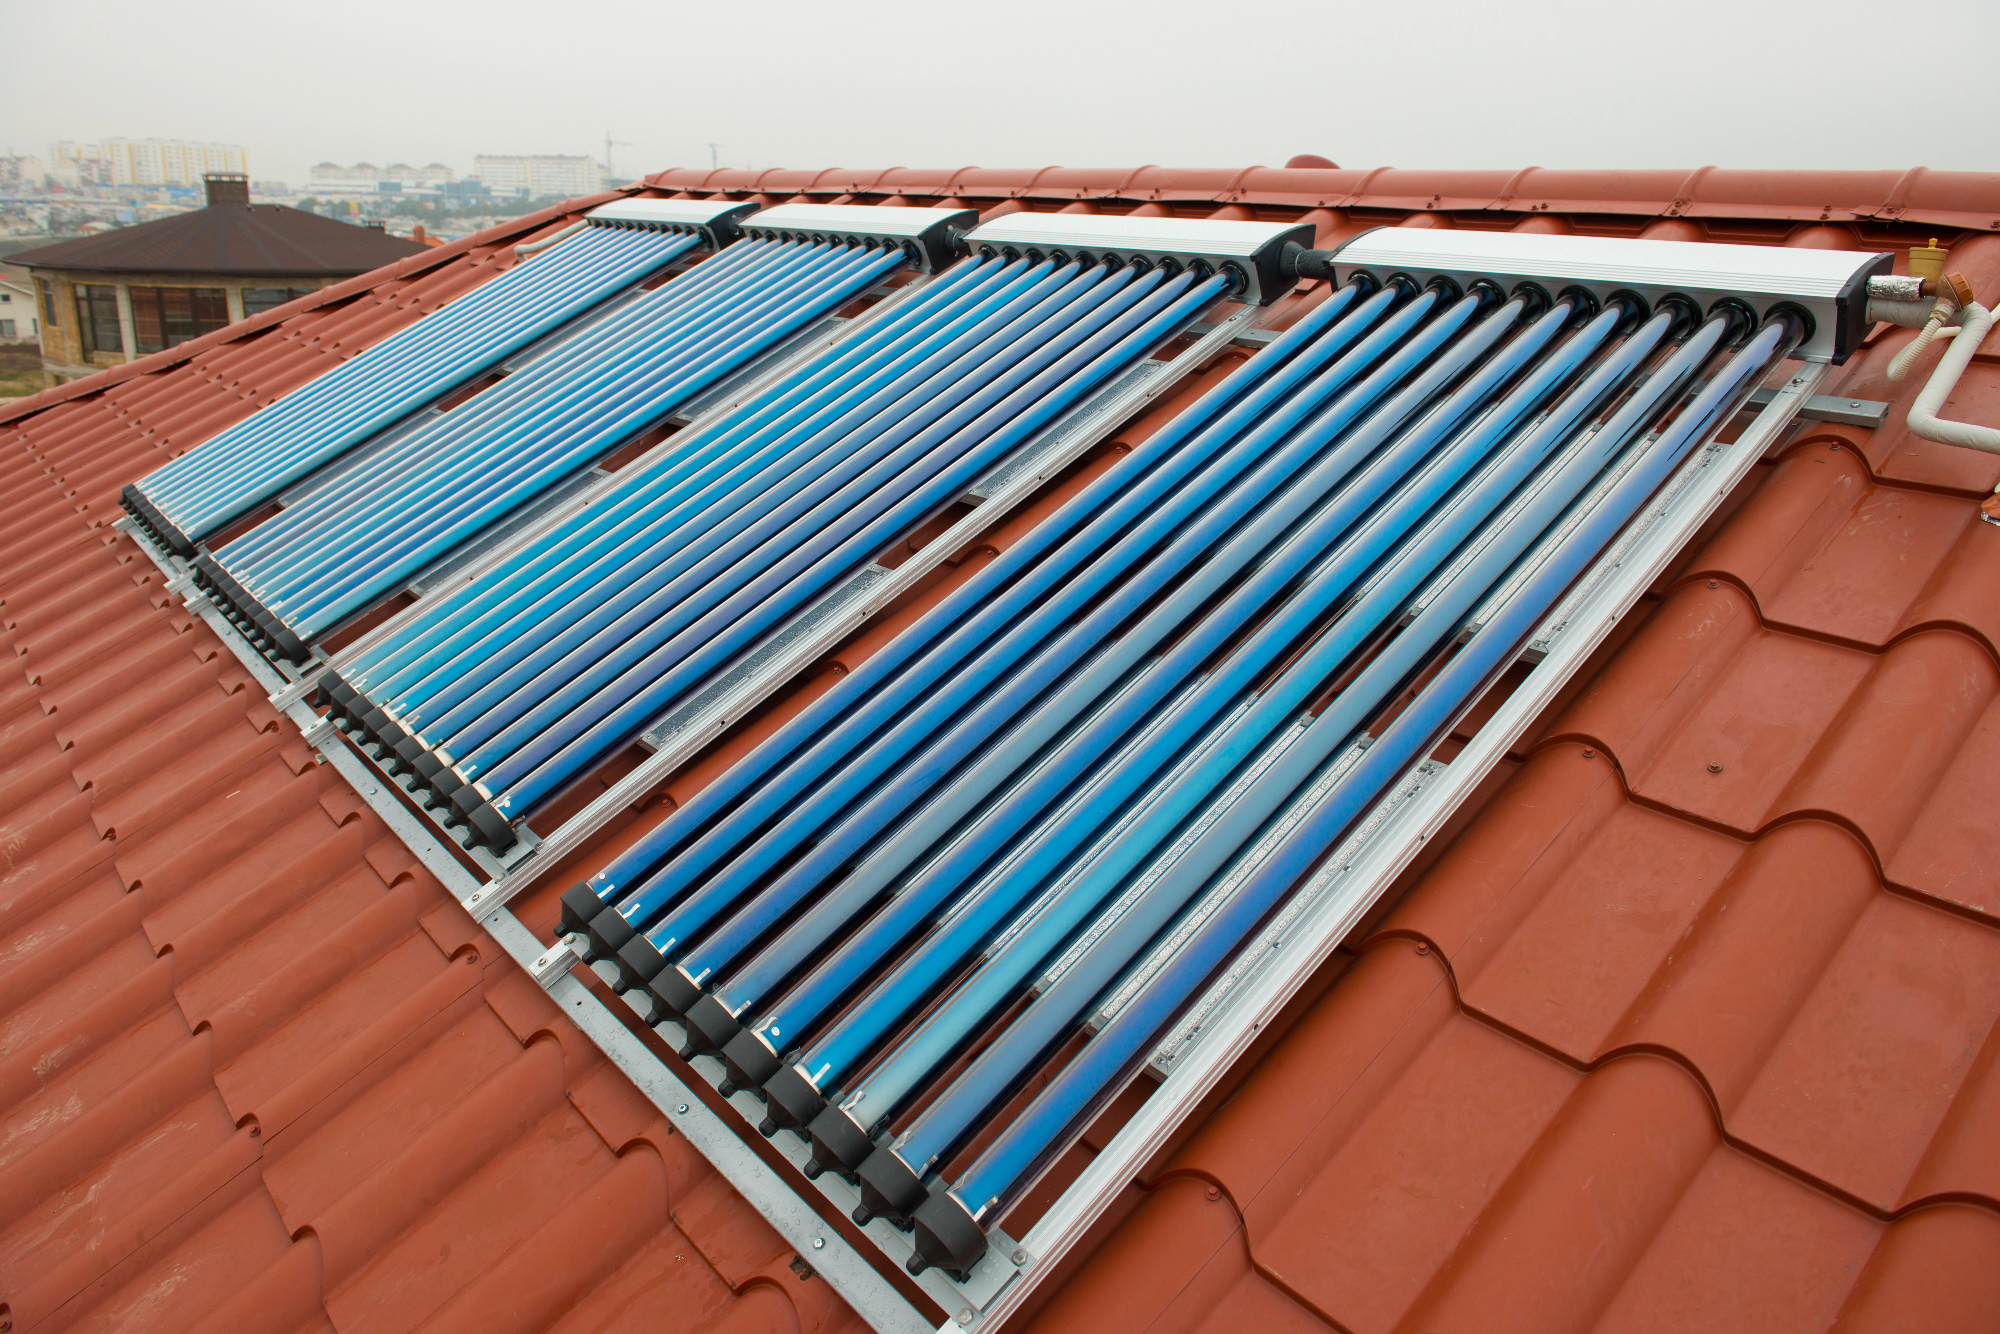 Novi sončni kolektorji na strehi naše hiše